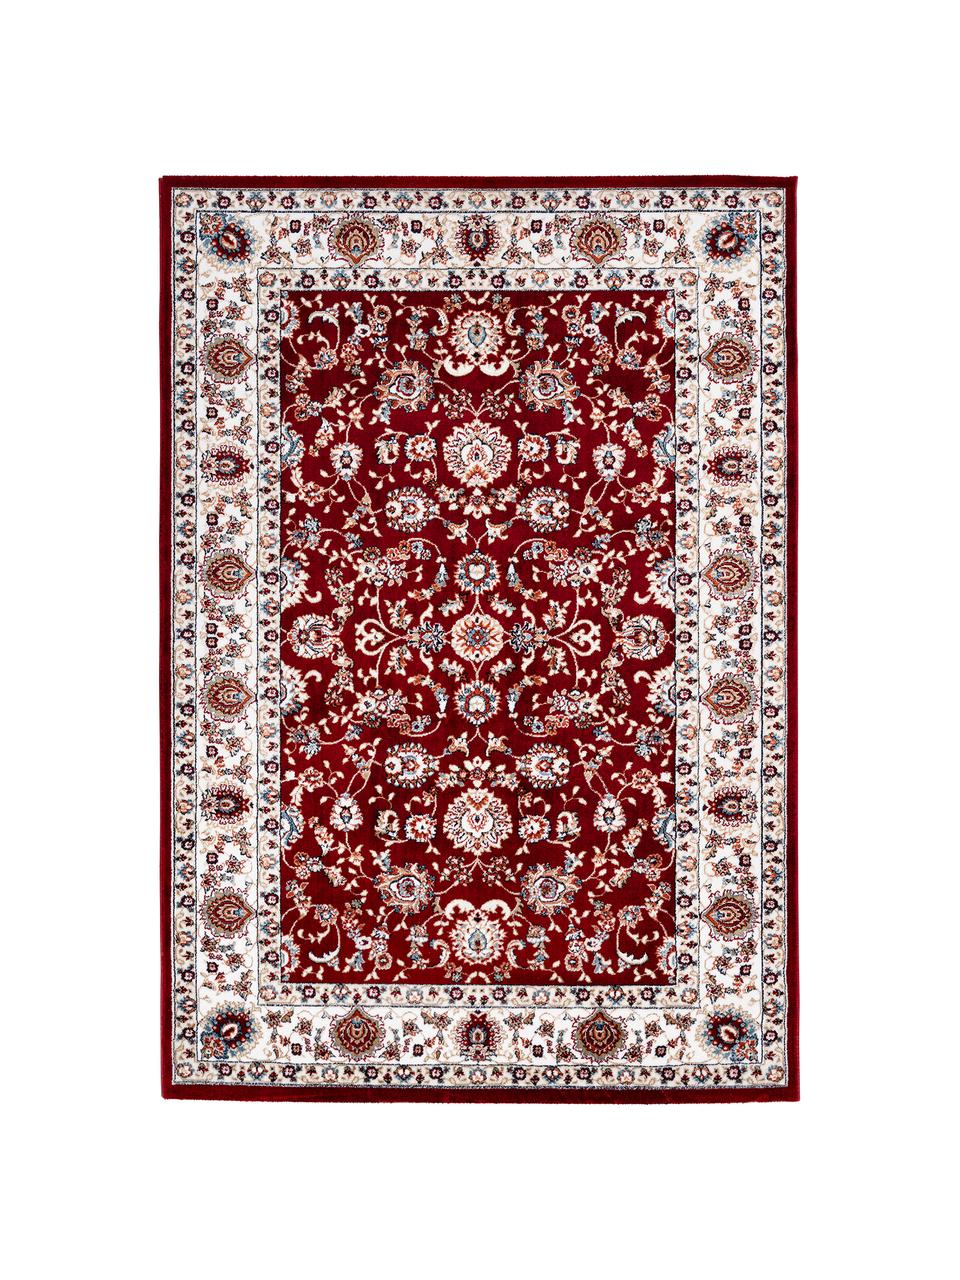 Tappeto rosso in stile orientale Isfahan, 100% poliestere, Rosso, multicolore, Larg. 80 x Lung. 150 cm (taglia XS)